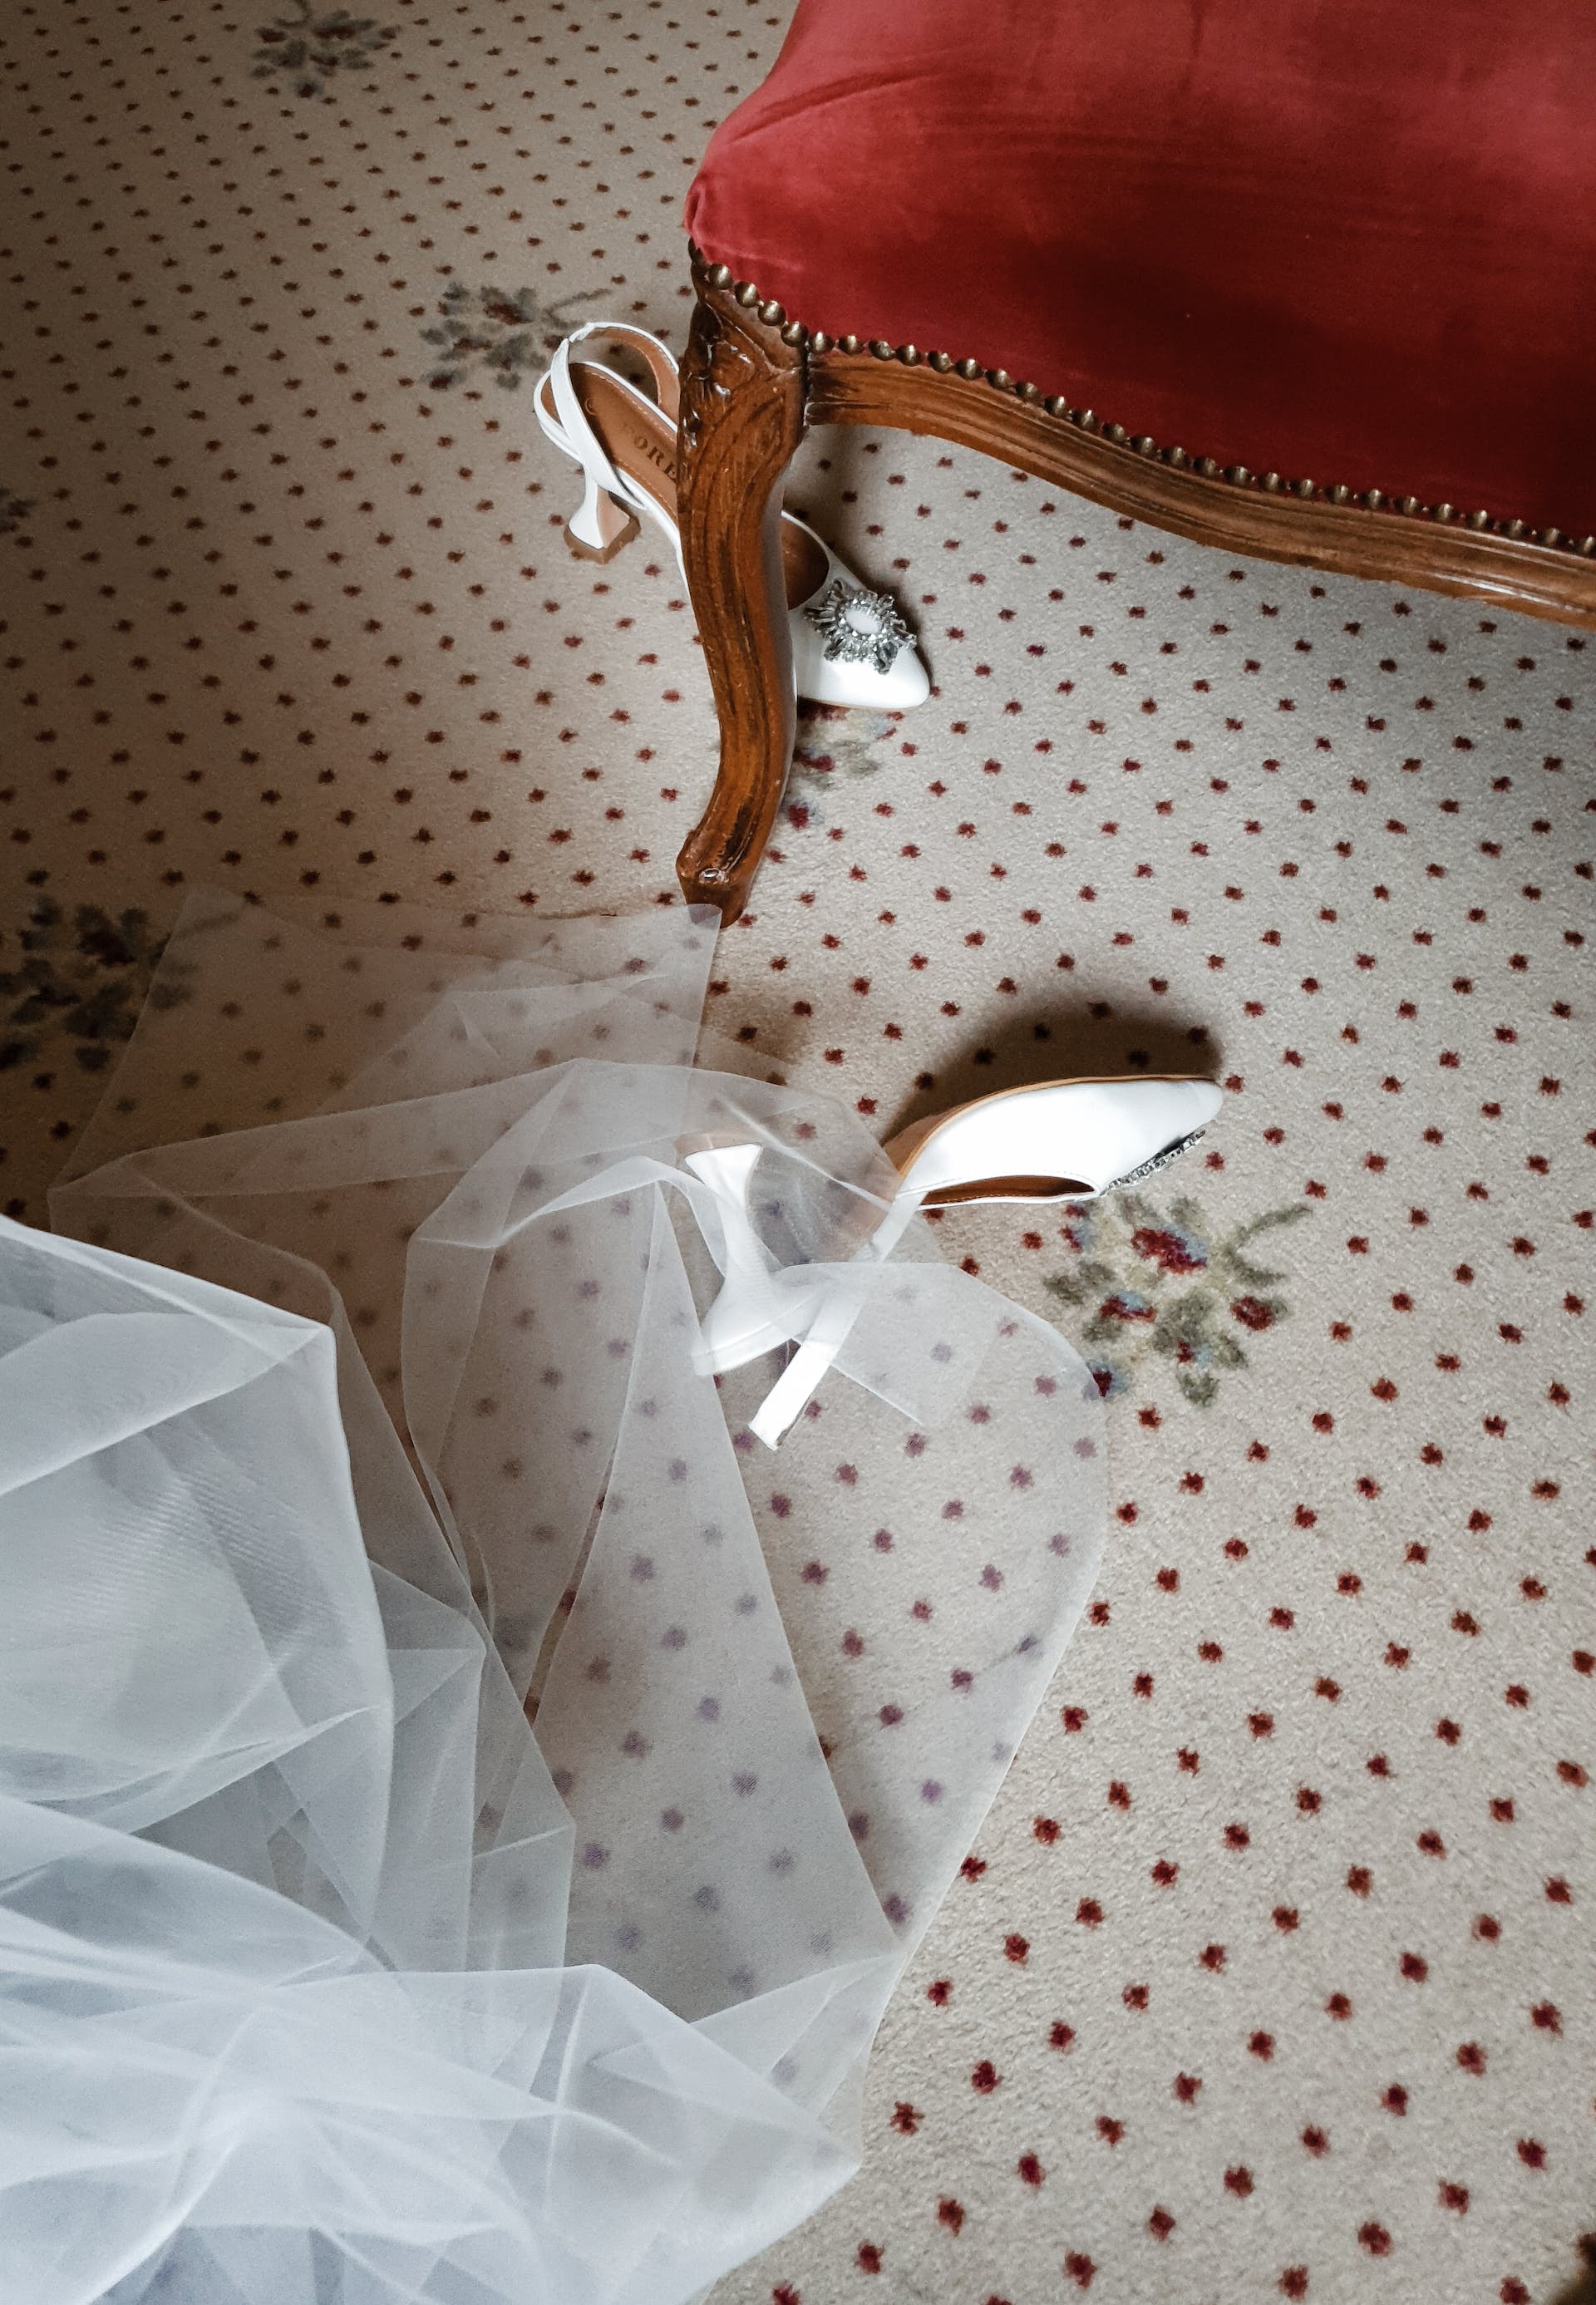 La robe de mariée et les chaussures d'une mariée sur le sol | Source : Pexels